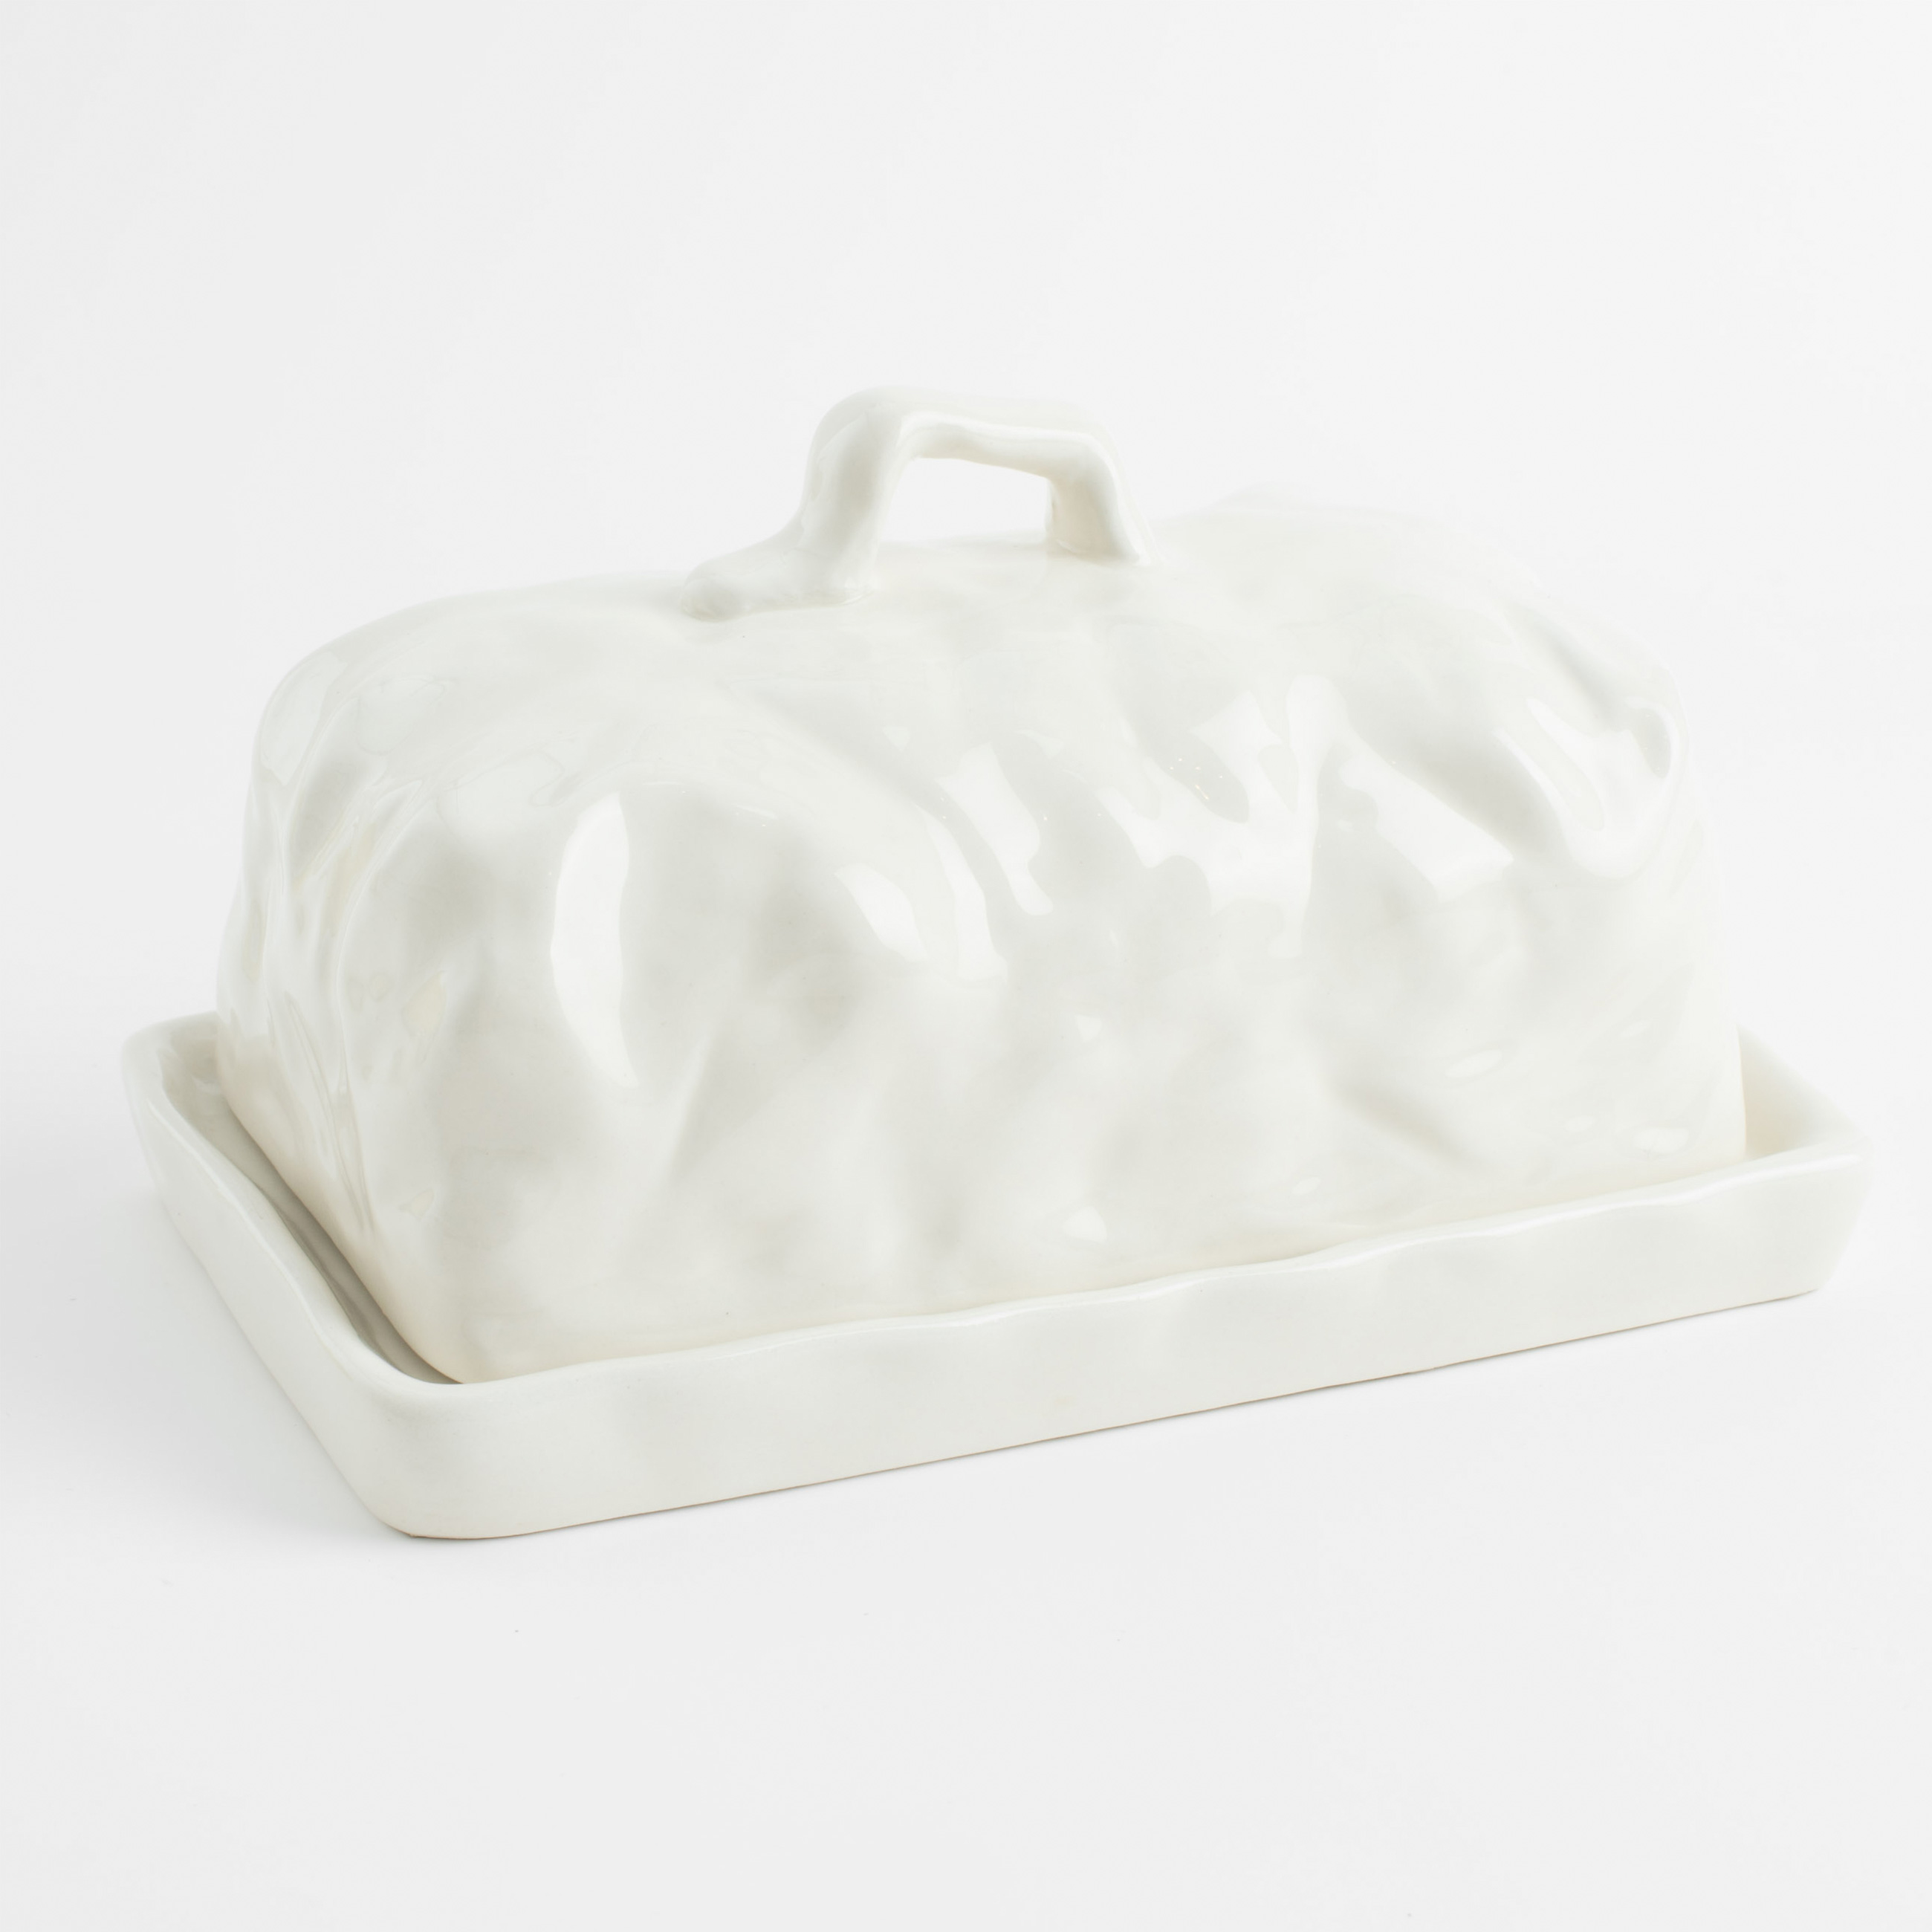 Масленка, 18 см, керамика, прямоугольная, молочная, Мятый эффект, Crumple изображение № 2